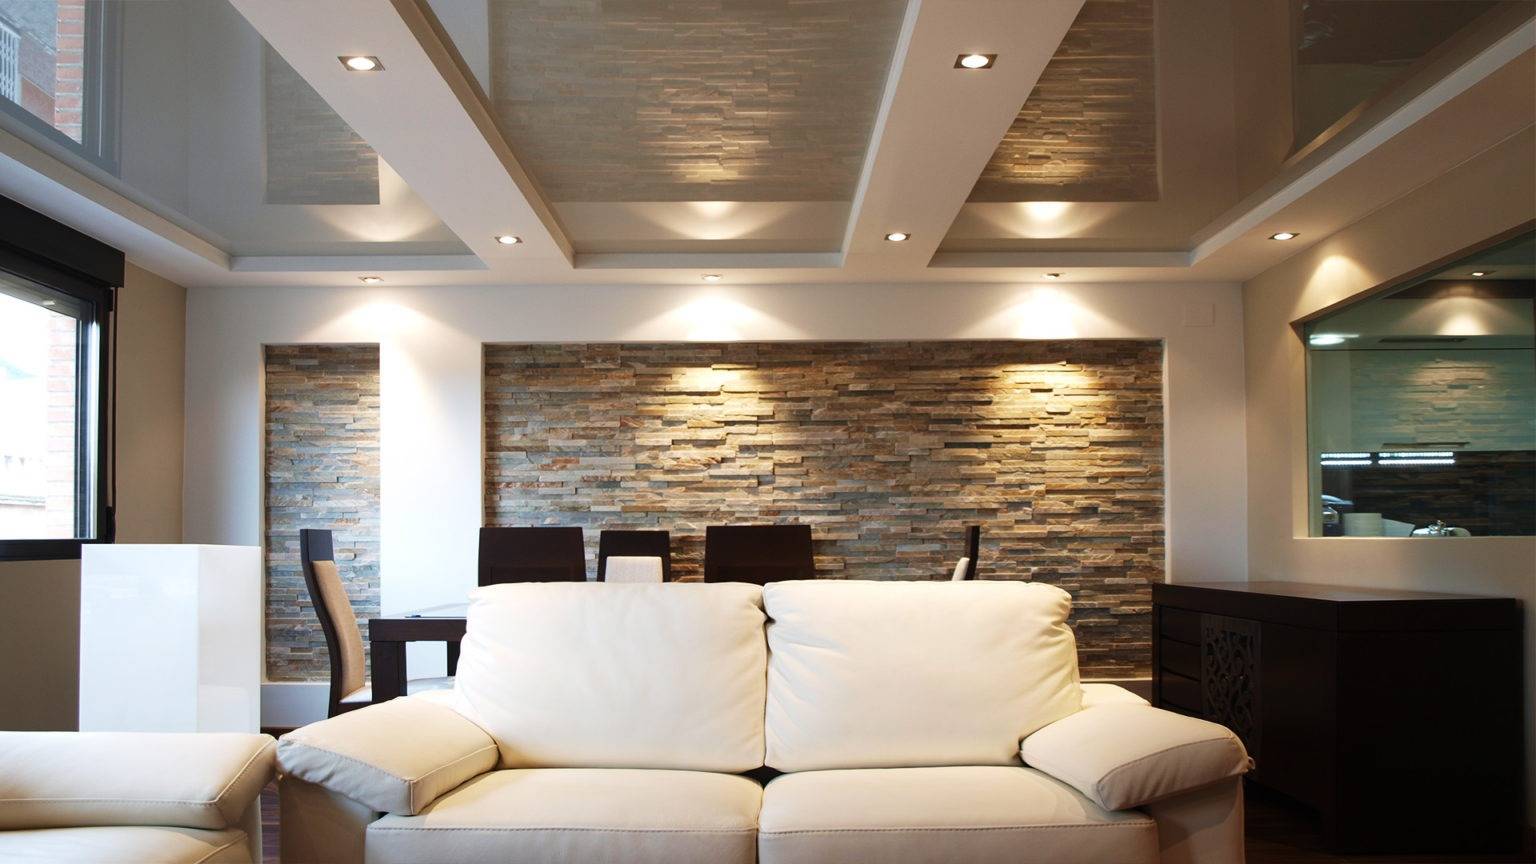 Какой потолок лучше: гипсокартонный или натяжной?